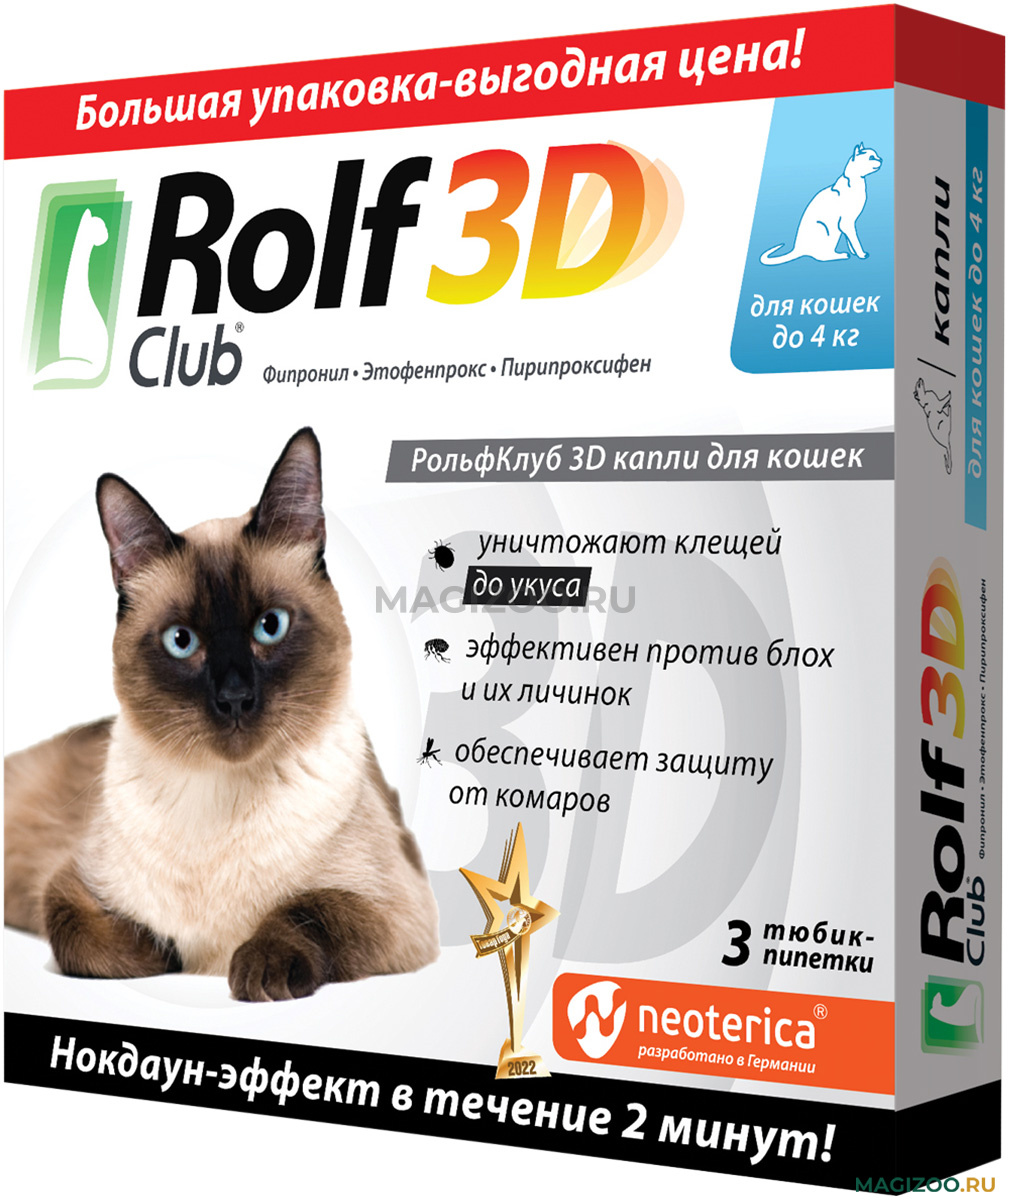 Рольф 3д капли для собак отзывы. Rolf Club 3d капли для собак 20-40 кг, арт. R405. РОЛЬФ 3д капли для кошек. Капли от блох Rolf 3d. РОЛЬФ клаб для кошек.